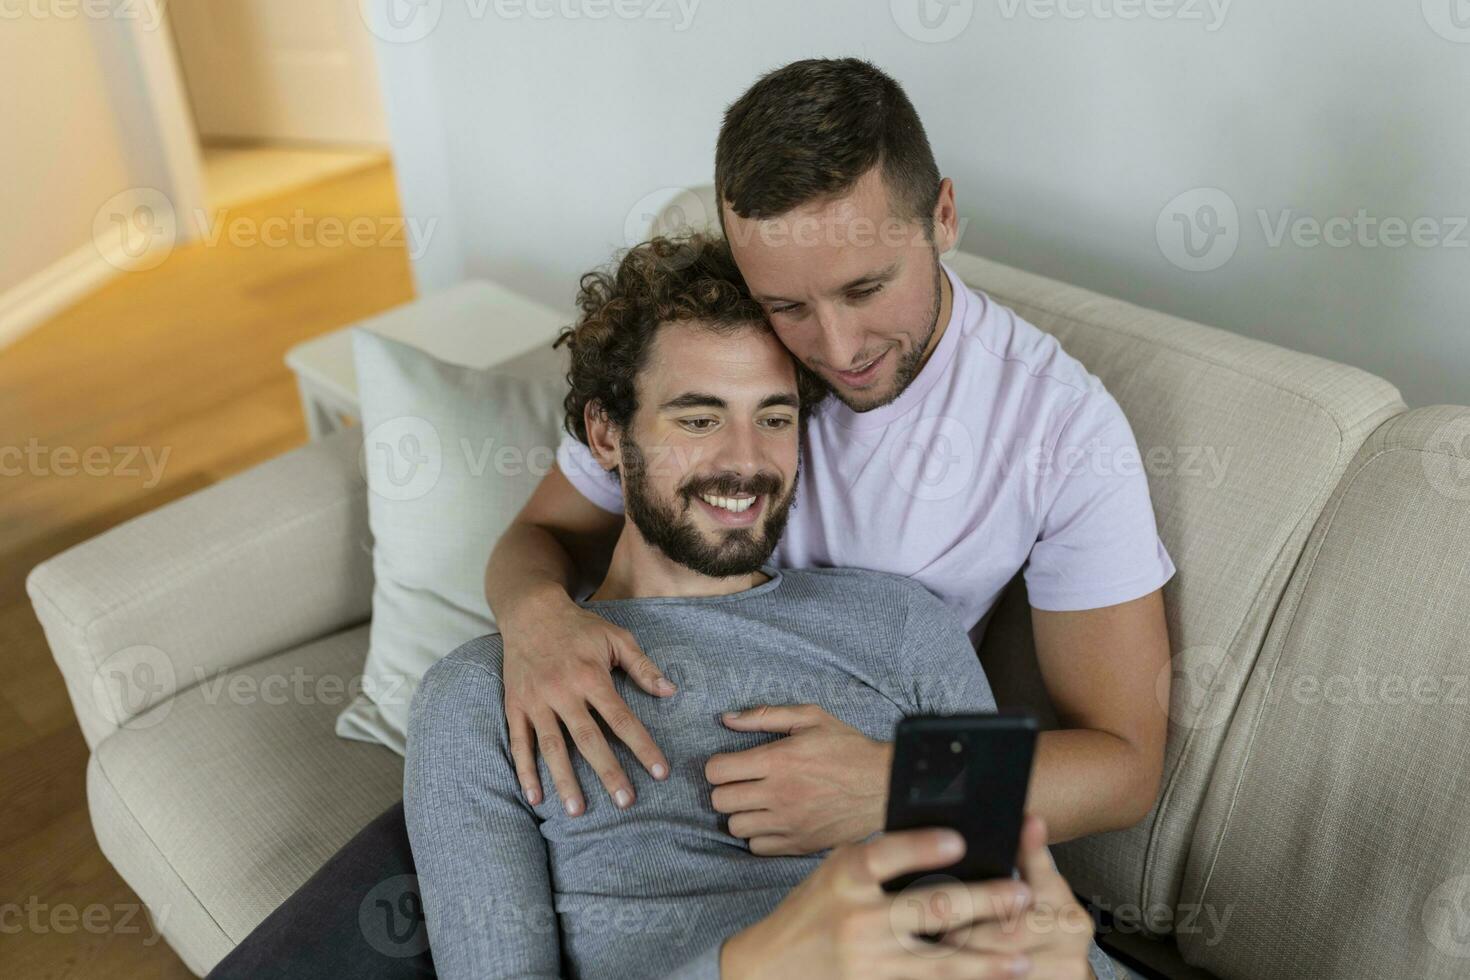 linda joven gay Pareja vídeo vocación su amigos en su vivo habitación a hogar. dos masculino amantes sonriente alegremente mientras saludo su amigos en un teléfono inteligente joven gay Pareja sentado juntos. foto